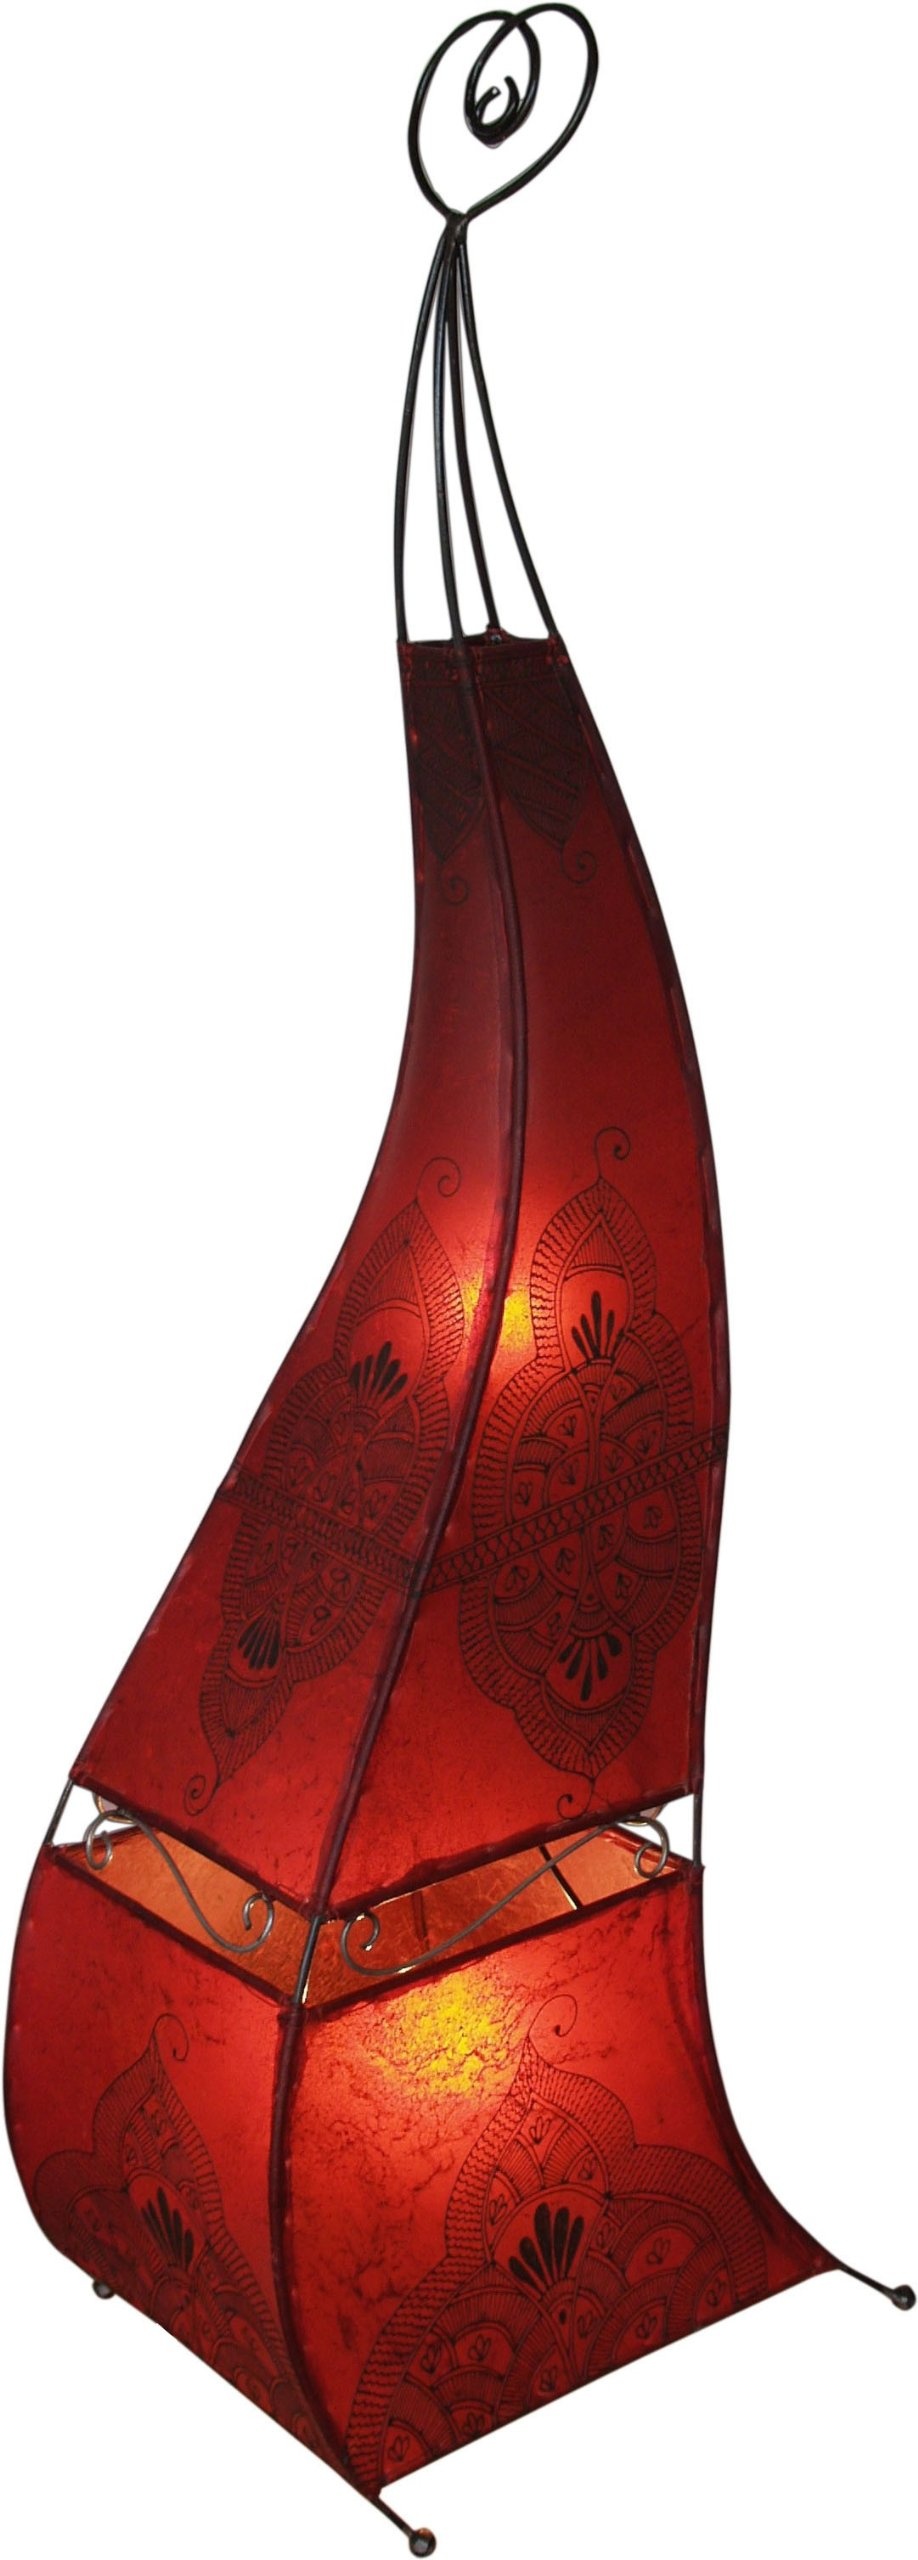 GURU SHOP Hennalampe, Leder Stehlampe/Stehleuchte - Mauretania 118 cm, Rot, Farbe: Rot, Bunte, Exotische Stehleuchten